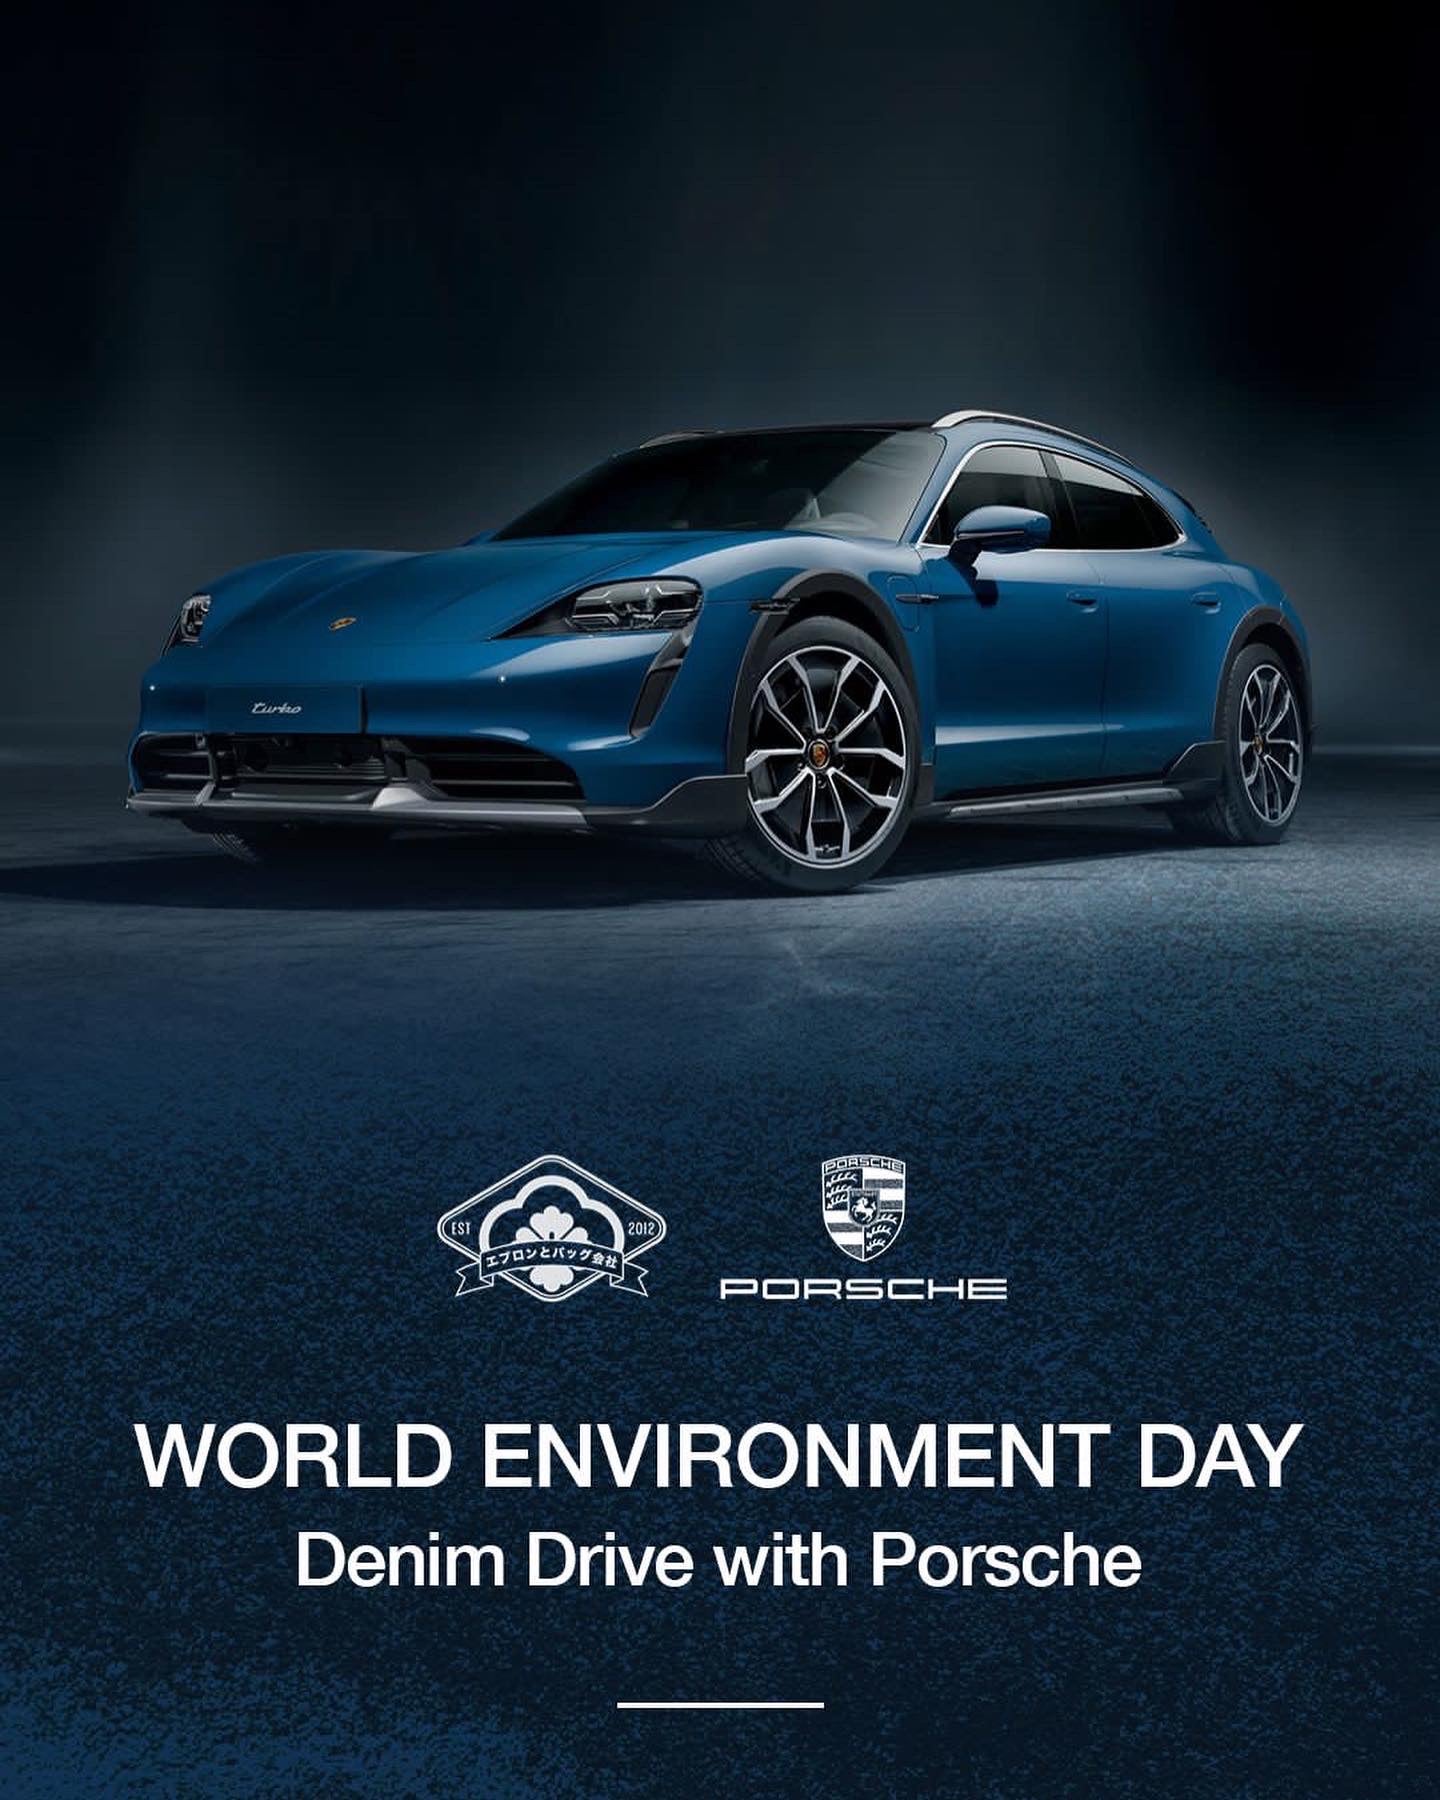 World Environment Day: Denim Drive with Porsche